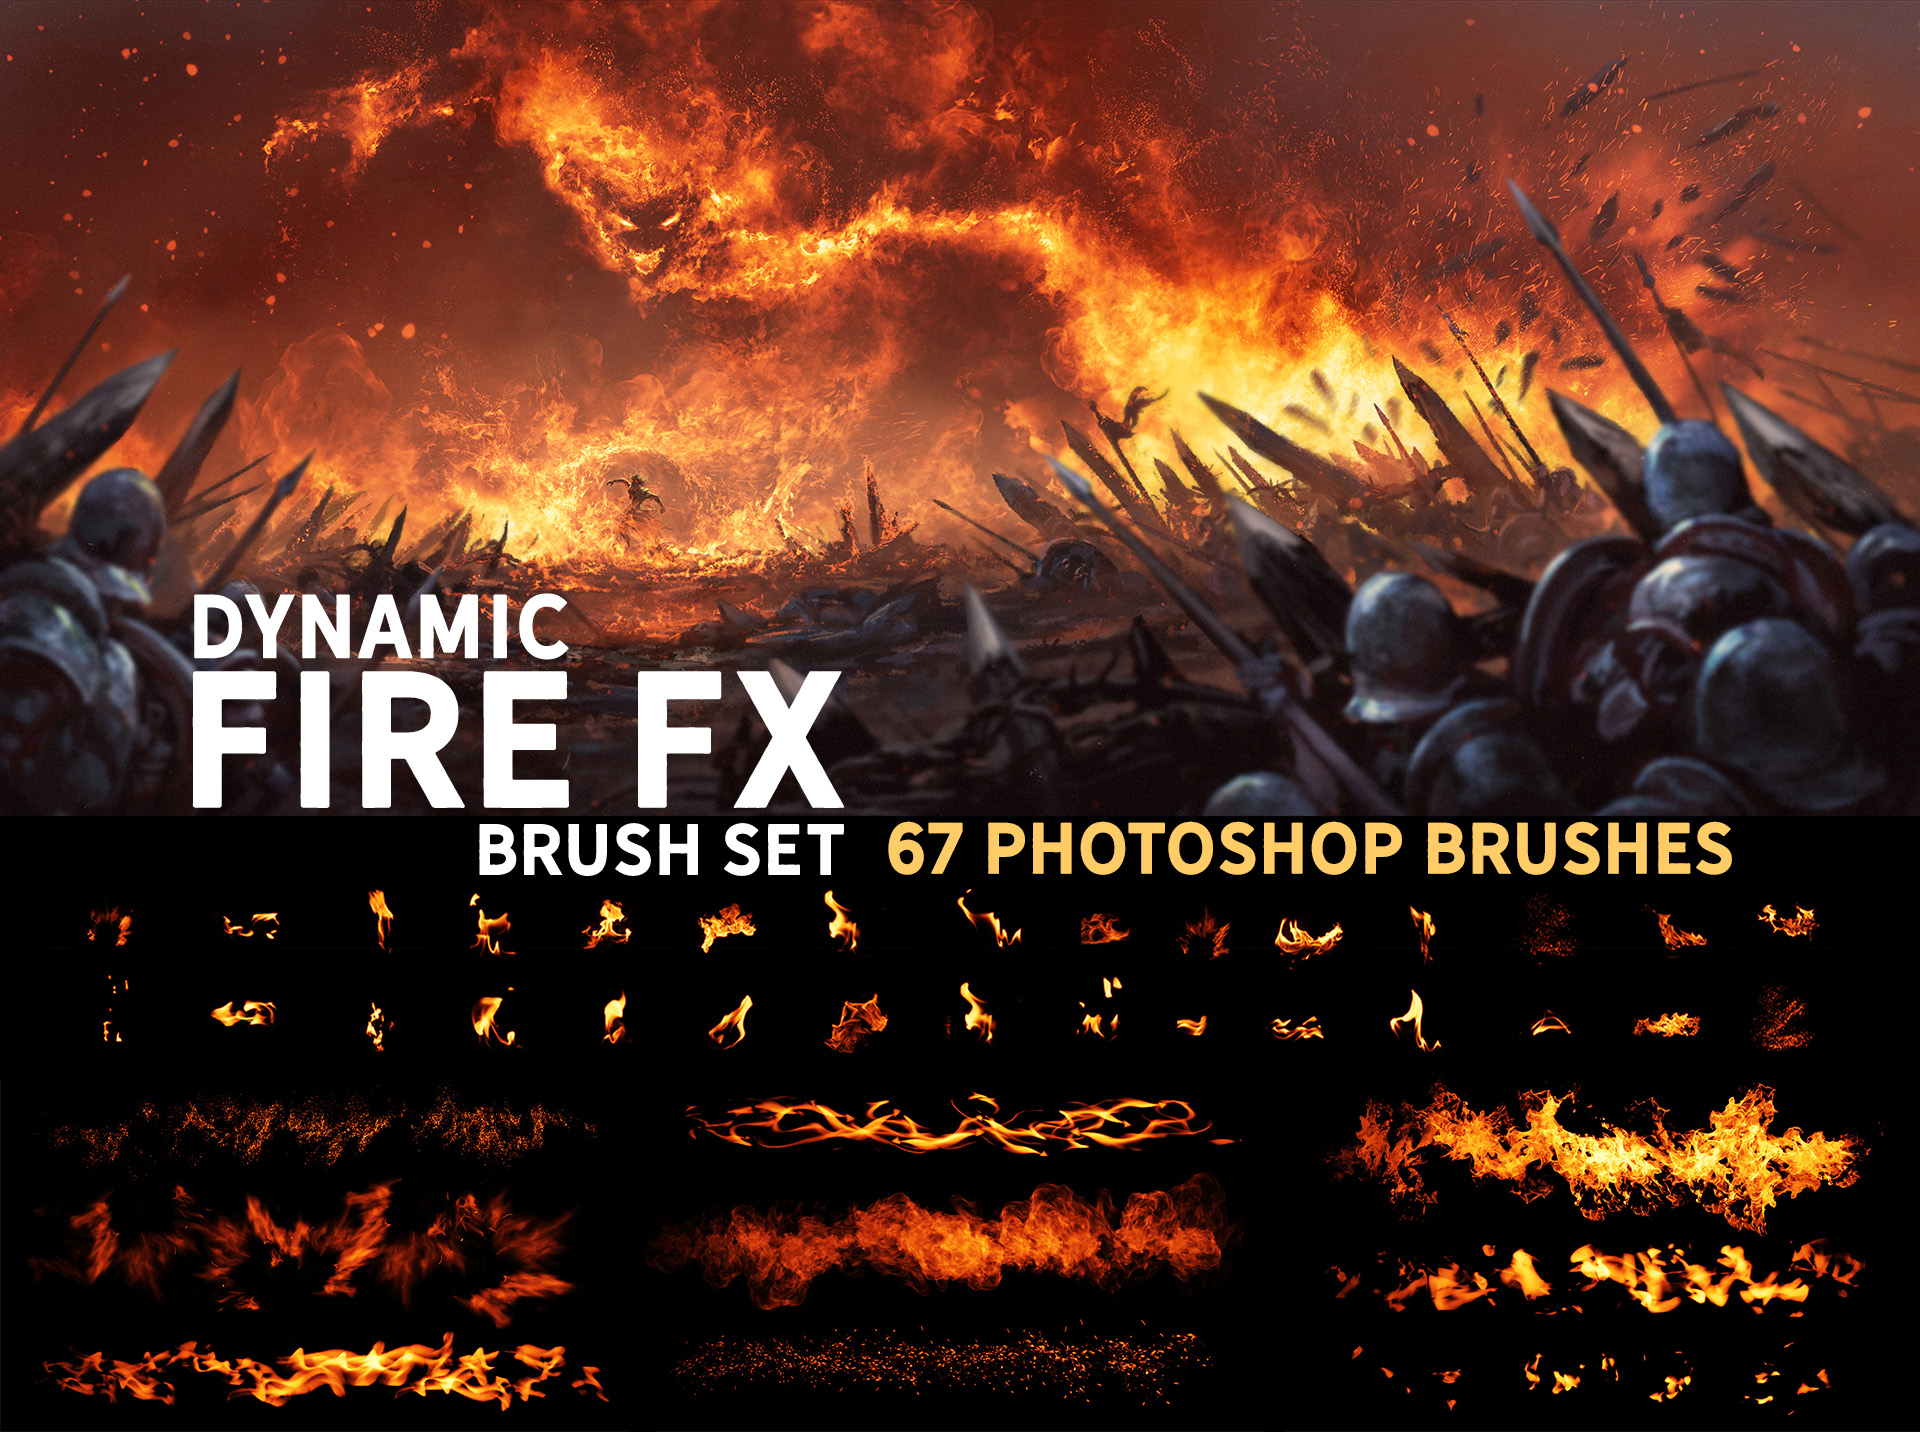 Dynamic Fire Fx Brush Set By Zsoltkosa On Deviantart